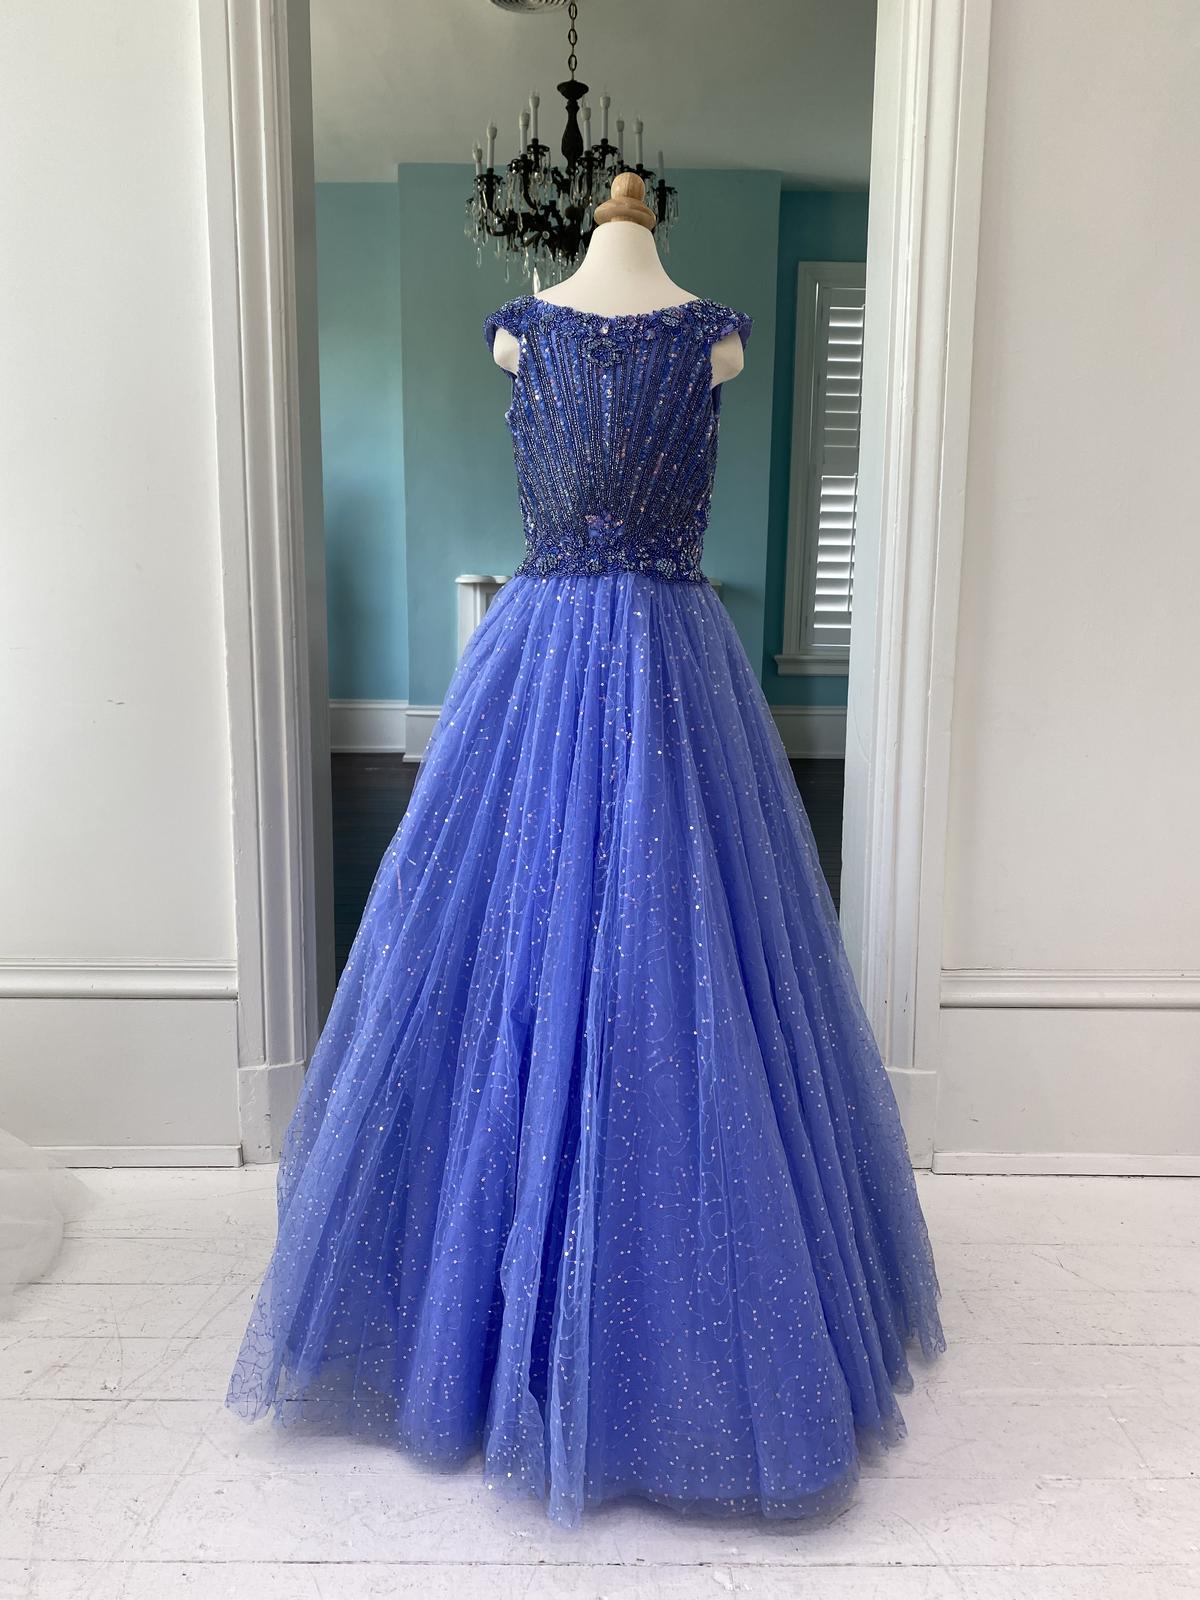 Sherri Hill Children's Periwinkle Little Girl's sequin pageant dress K54816 